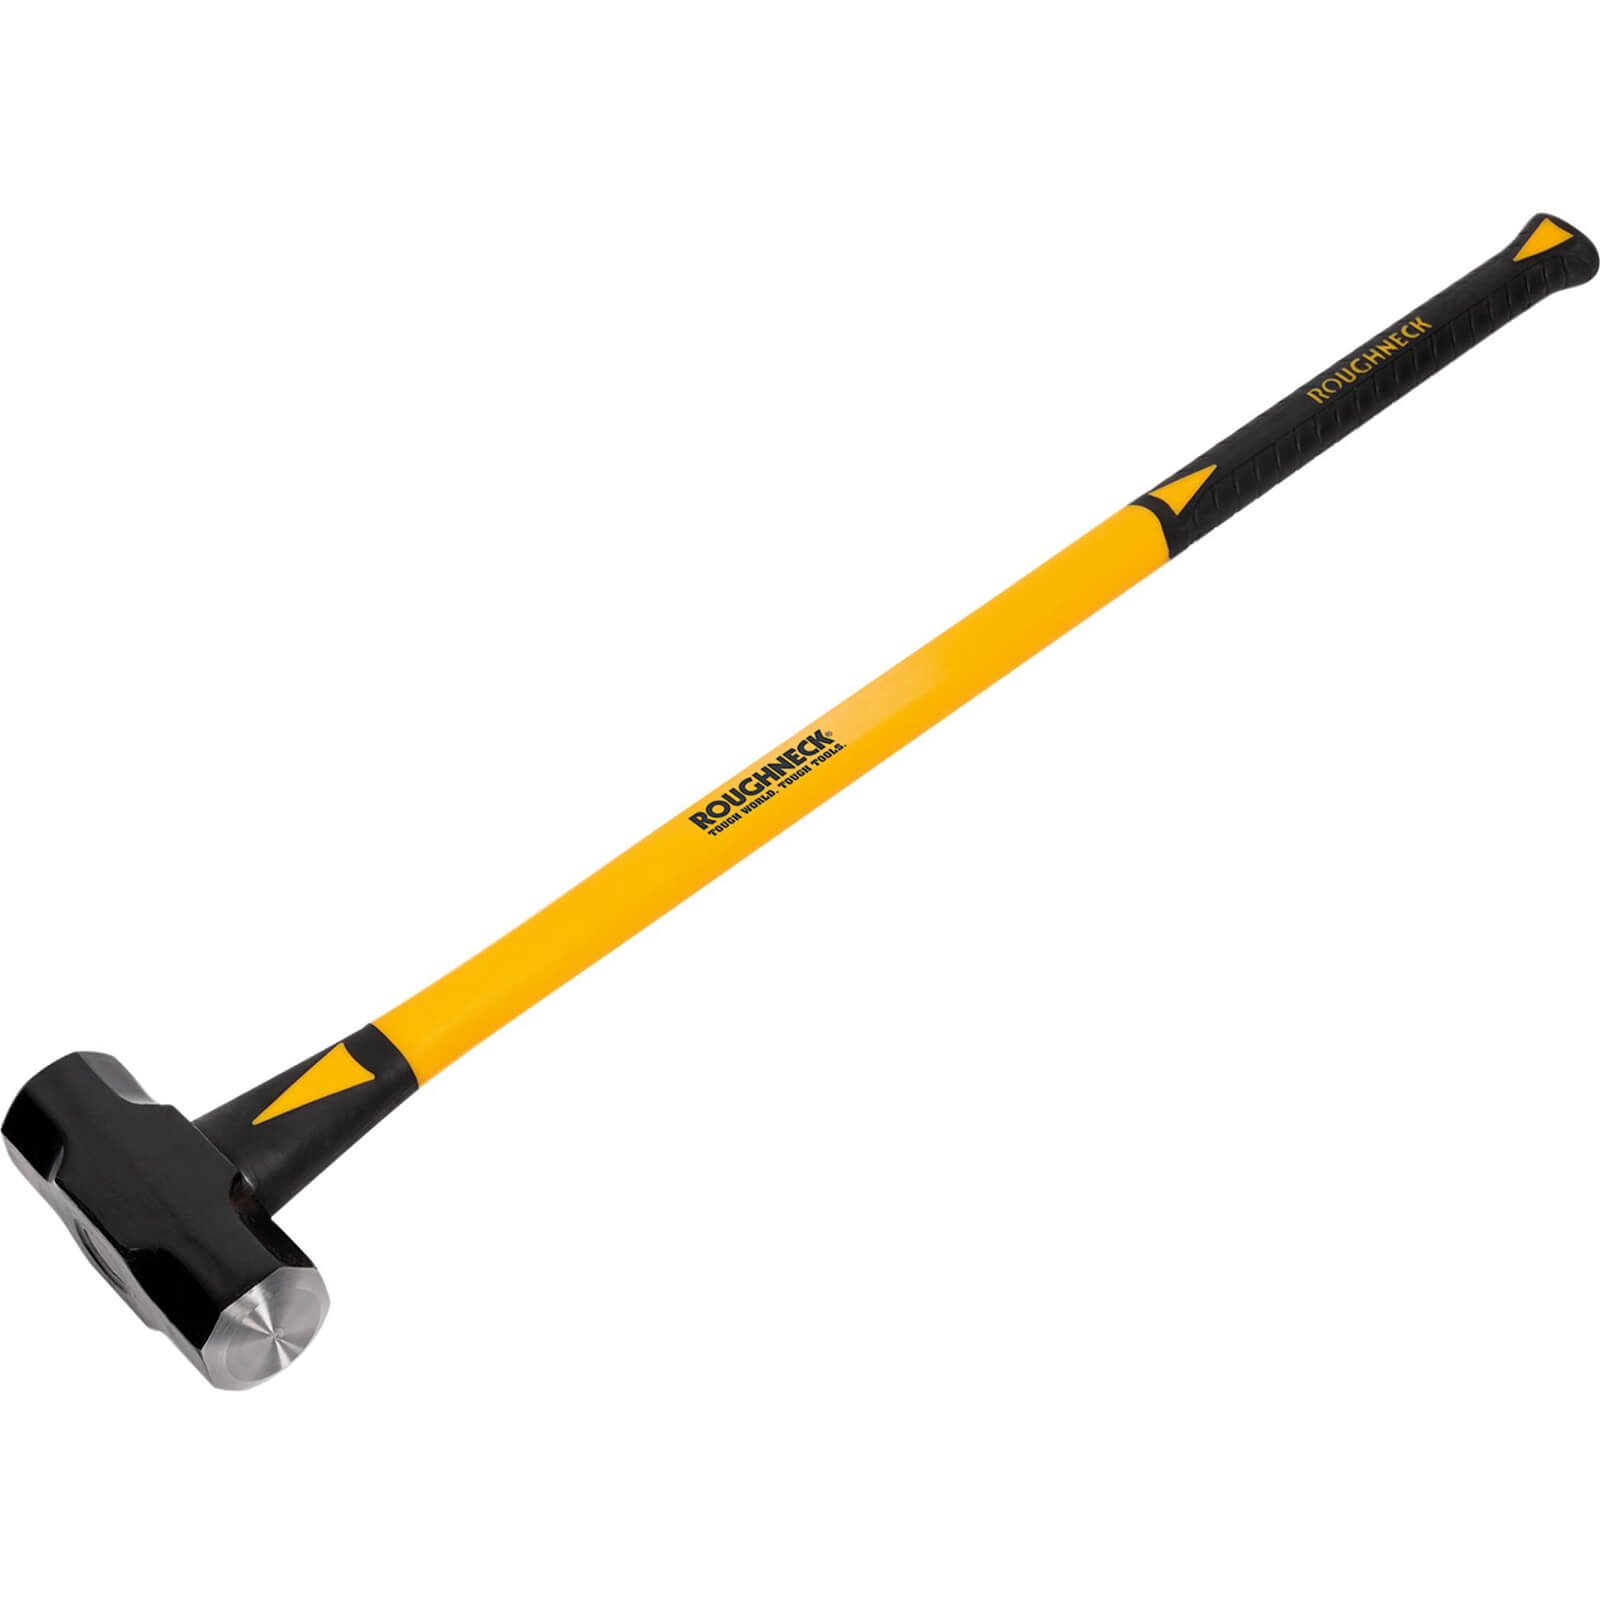 Image of Roughneck Sledge Hammer 3.6kg